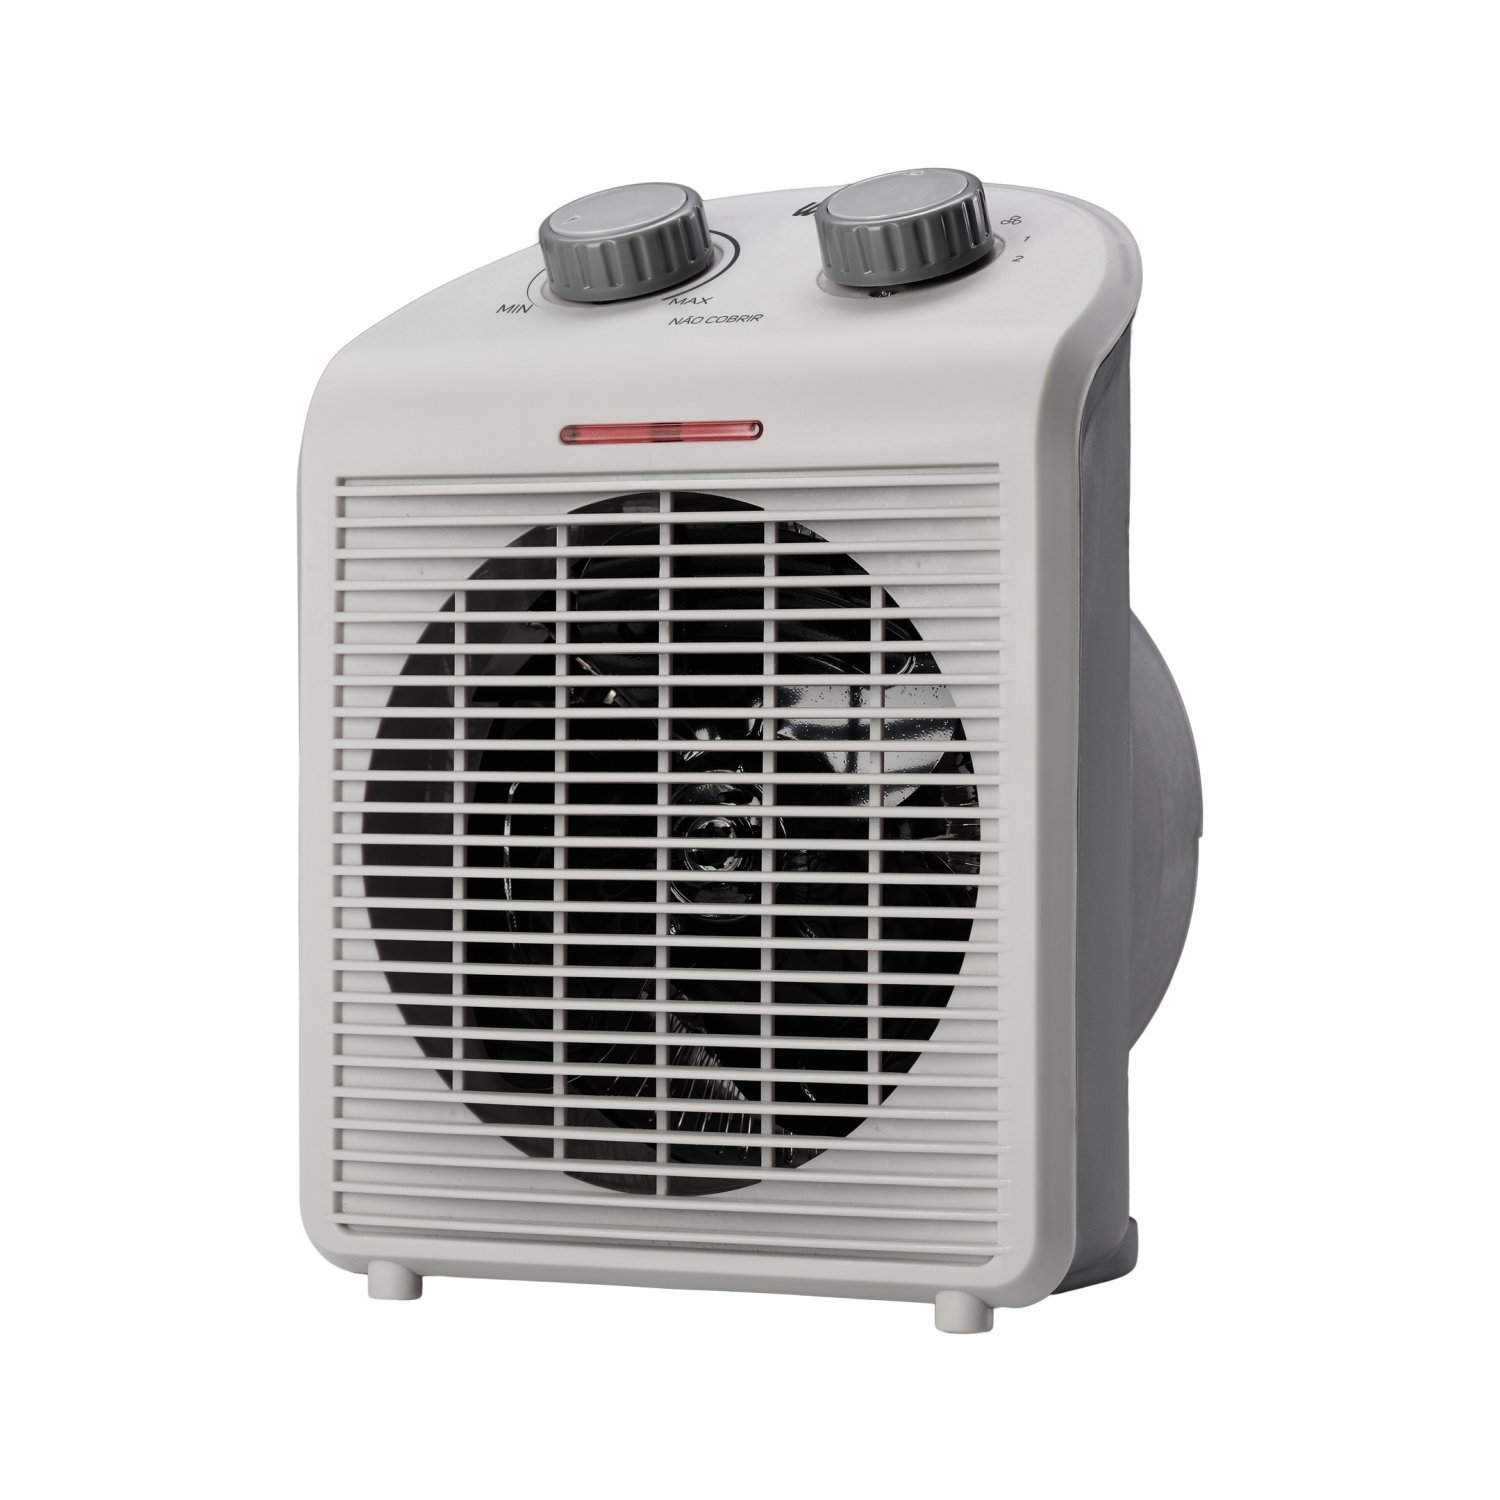 Aquecedor de Ar Portátil Air Heat 3 em 1 1500w 220v WAP Branco